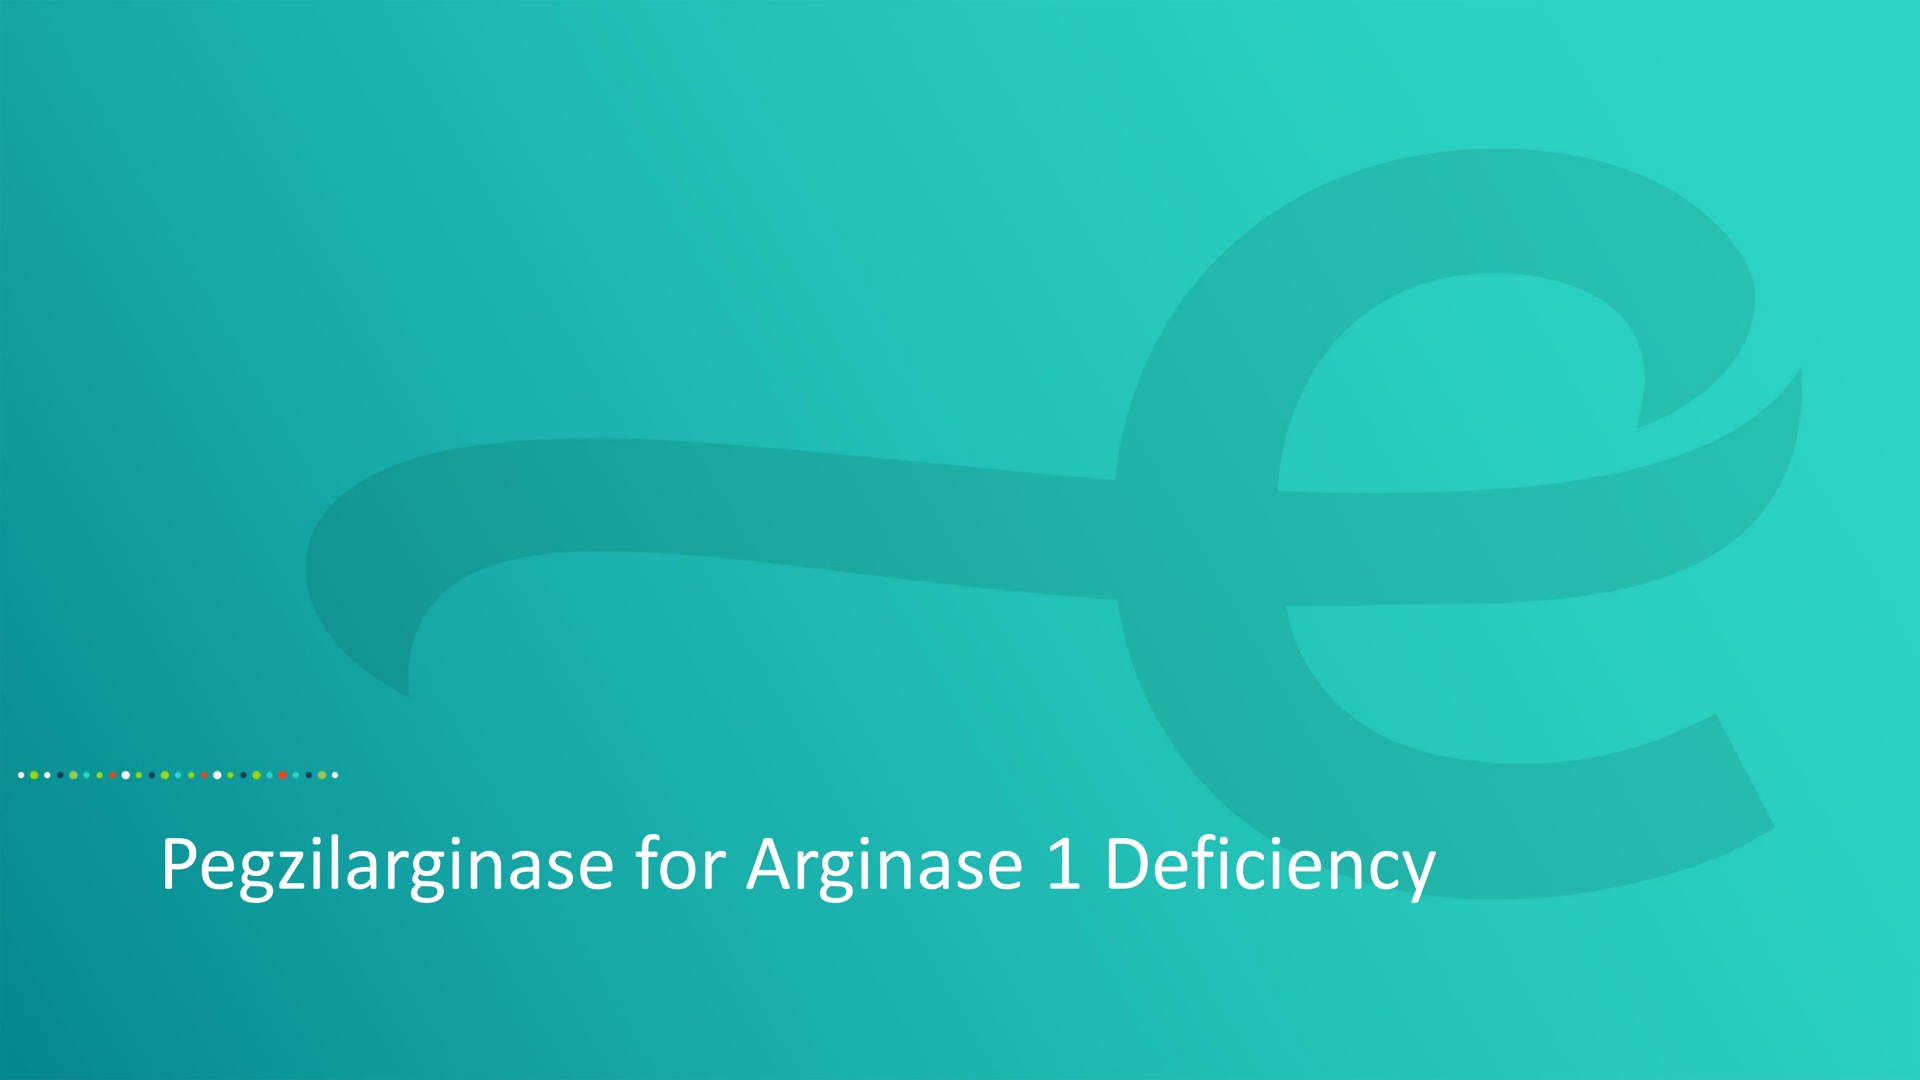 for deficiency | Aeglea BioTherapeutics